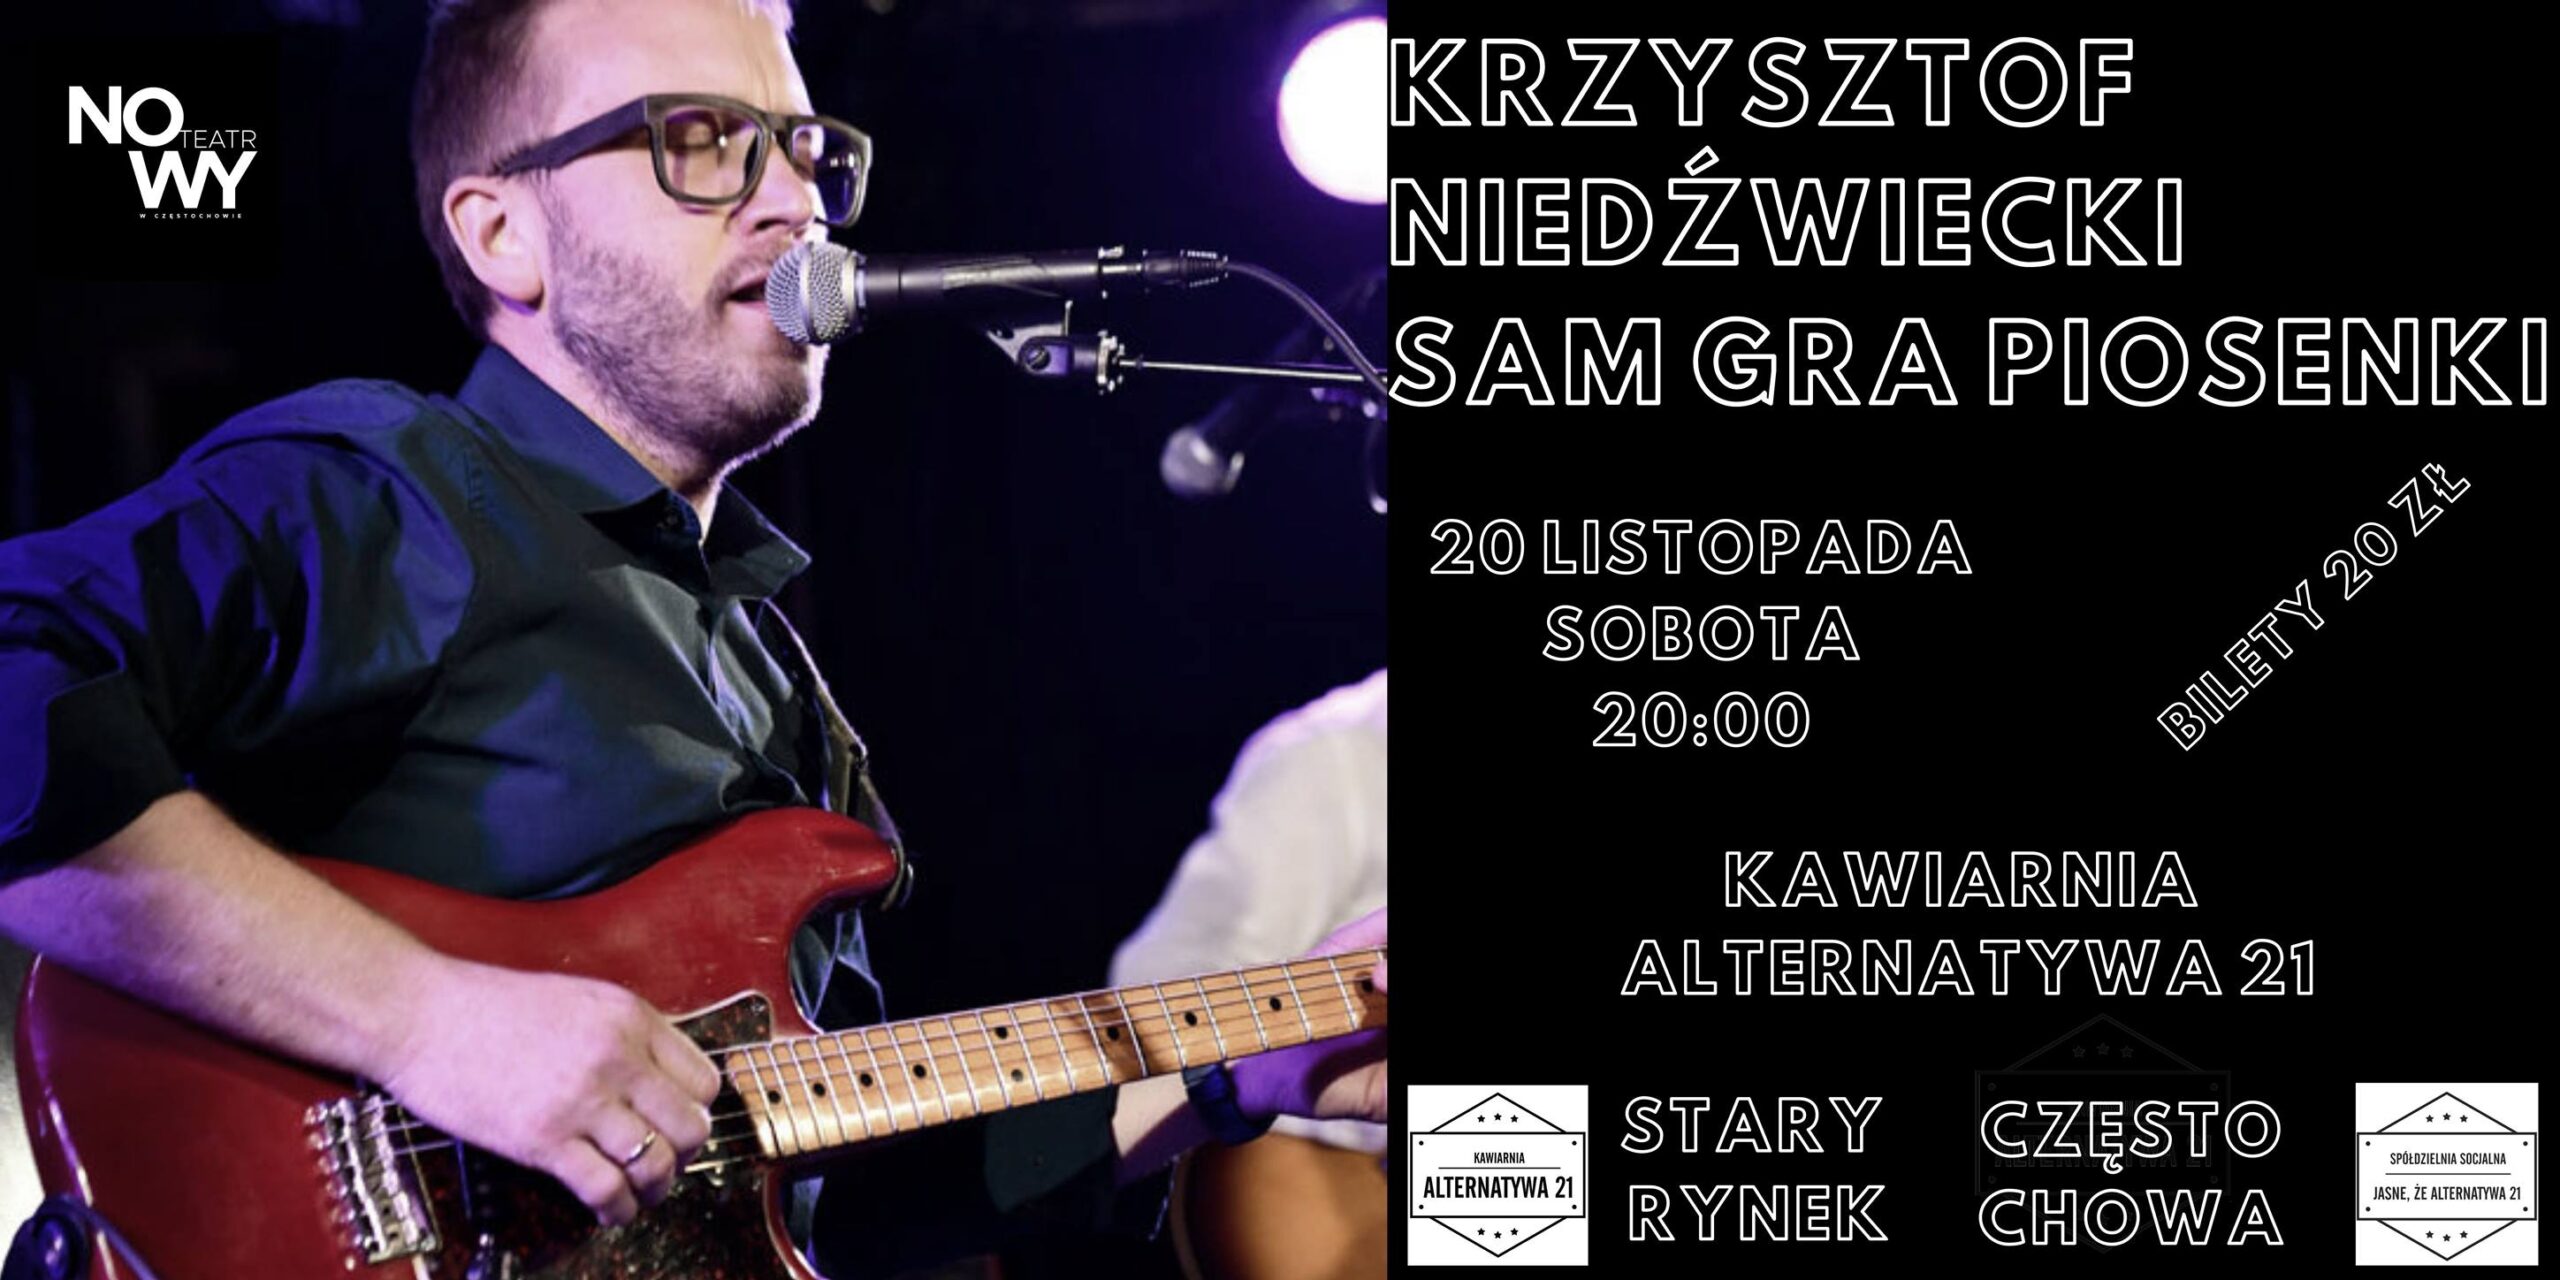 Krzysztof Niedźwiecki sam gra piosenki w częstochowskiej Alternatywie 21 4